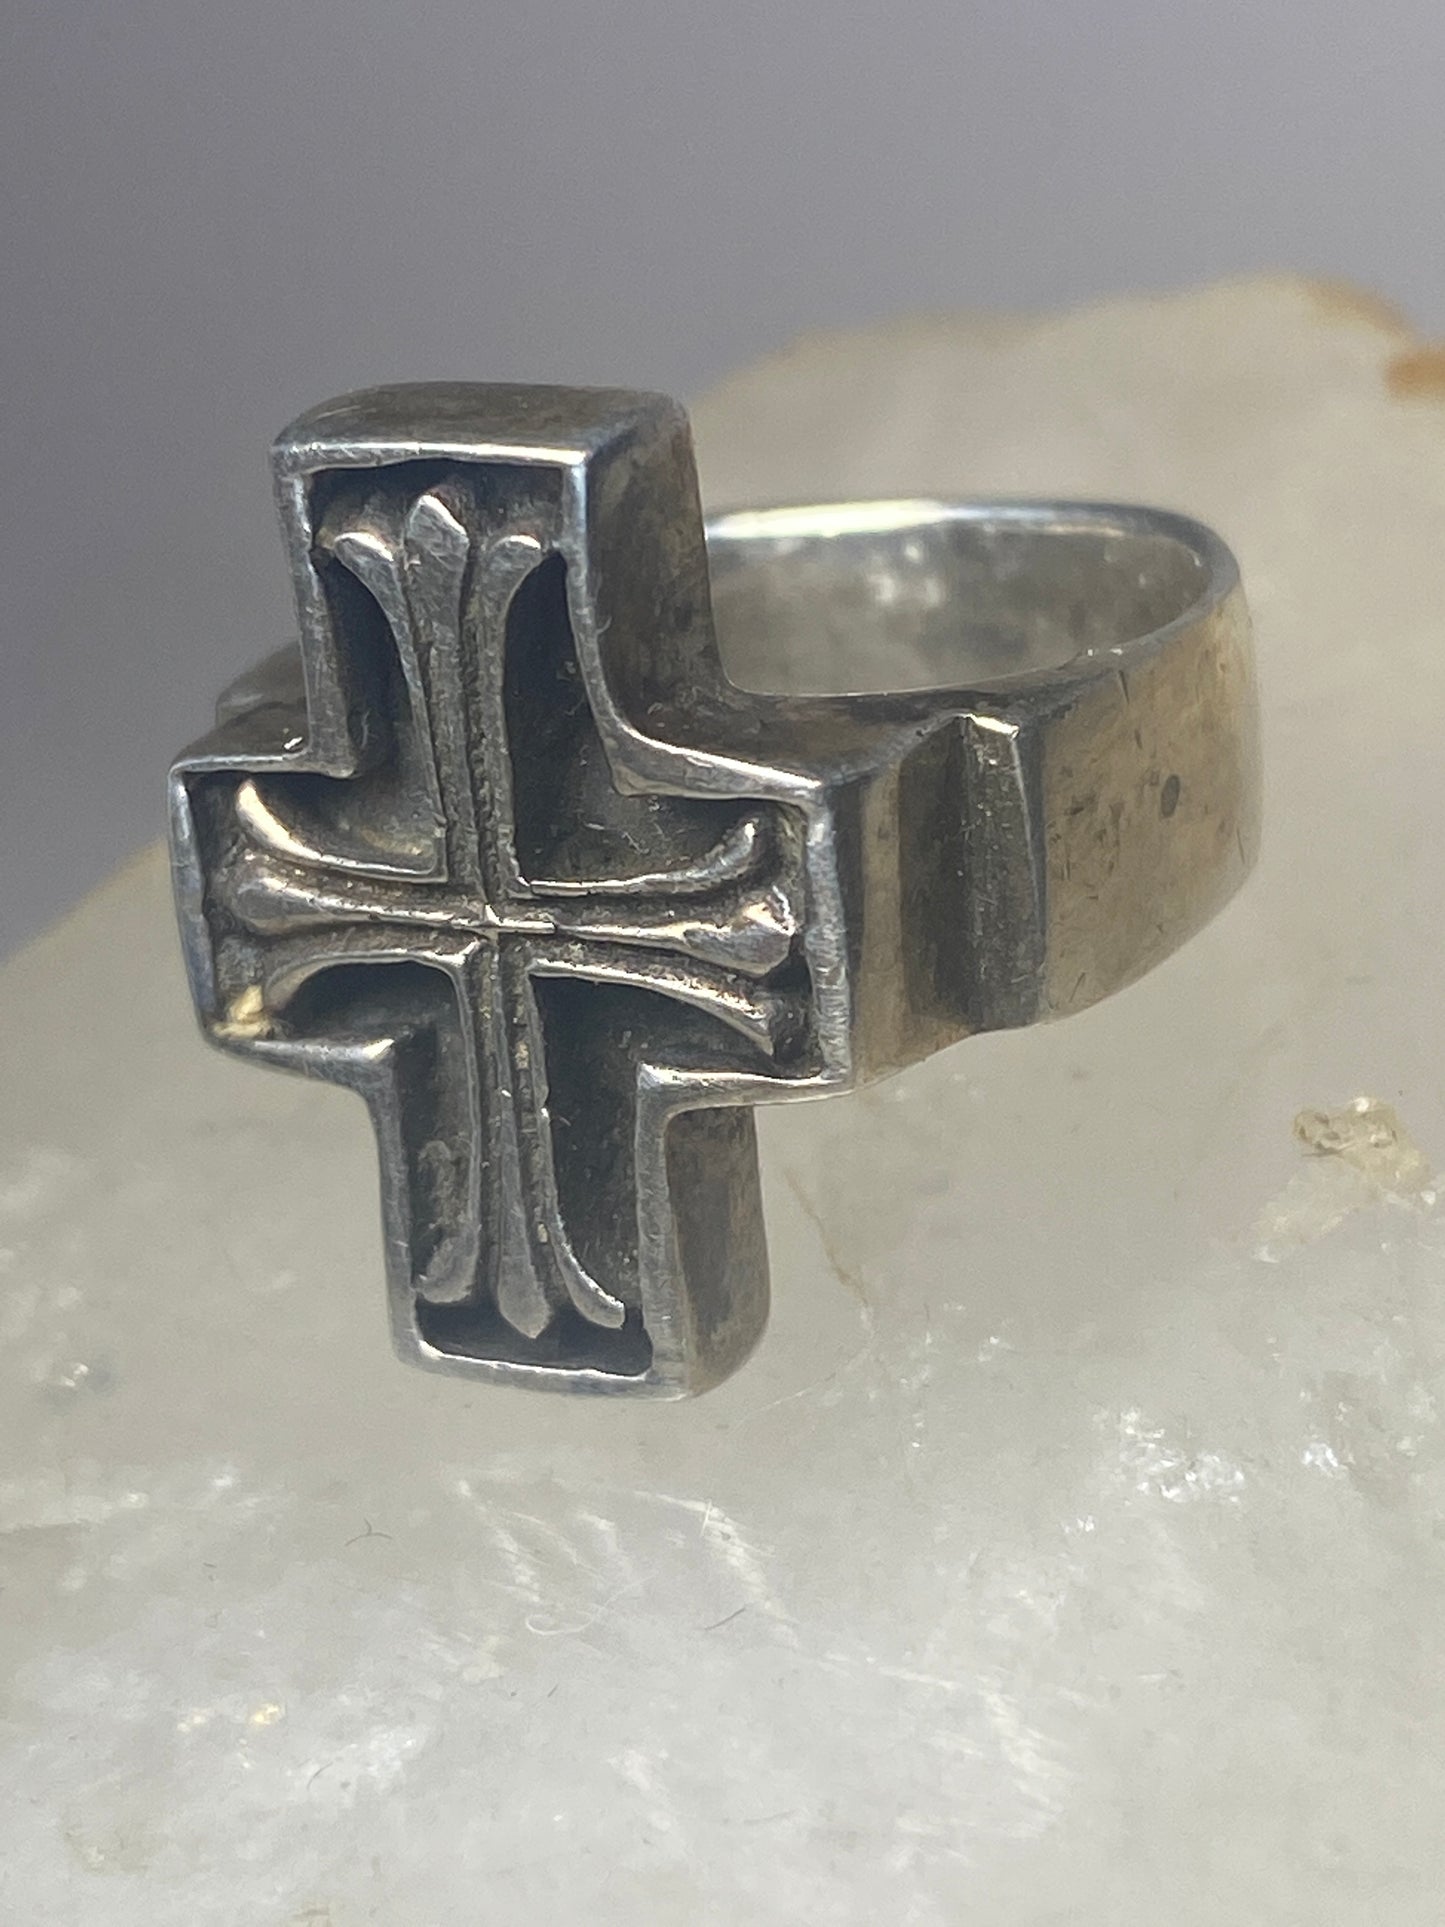 Cross ring religious  sterling silver women men